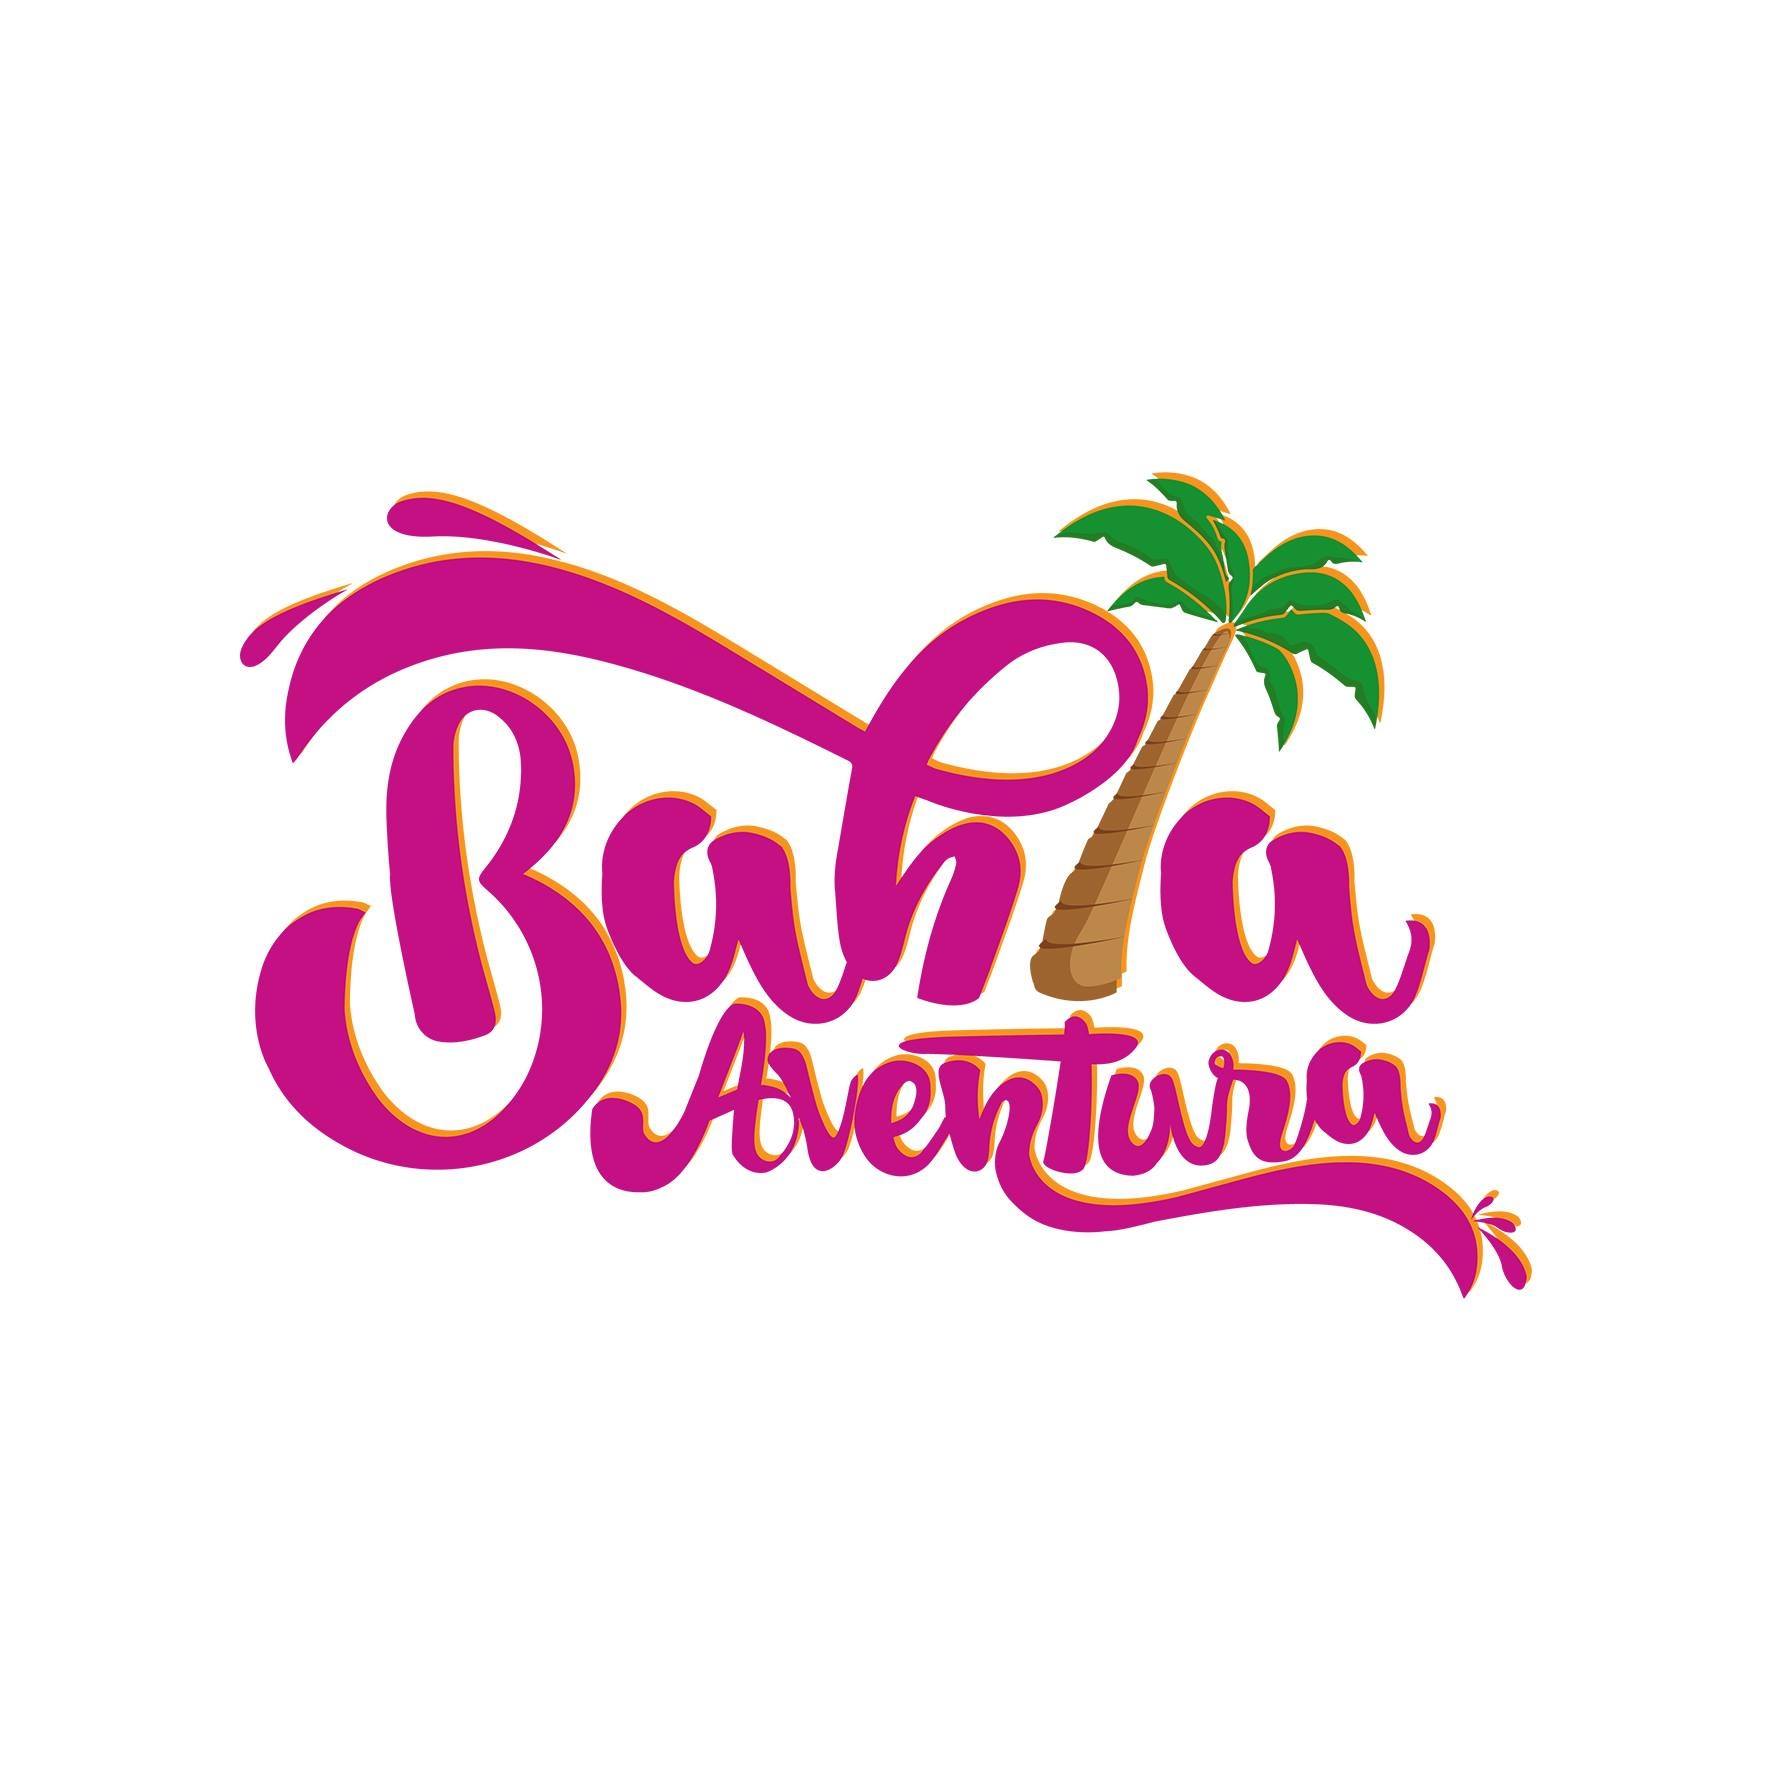 Bahia Aventura